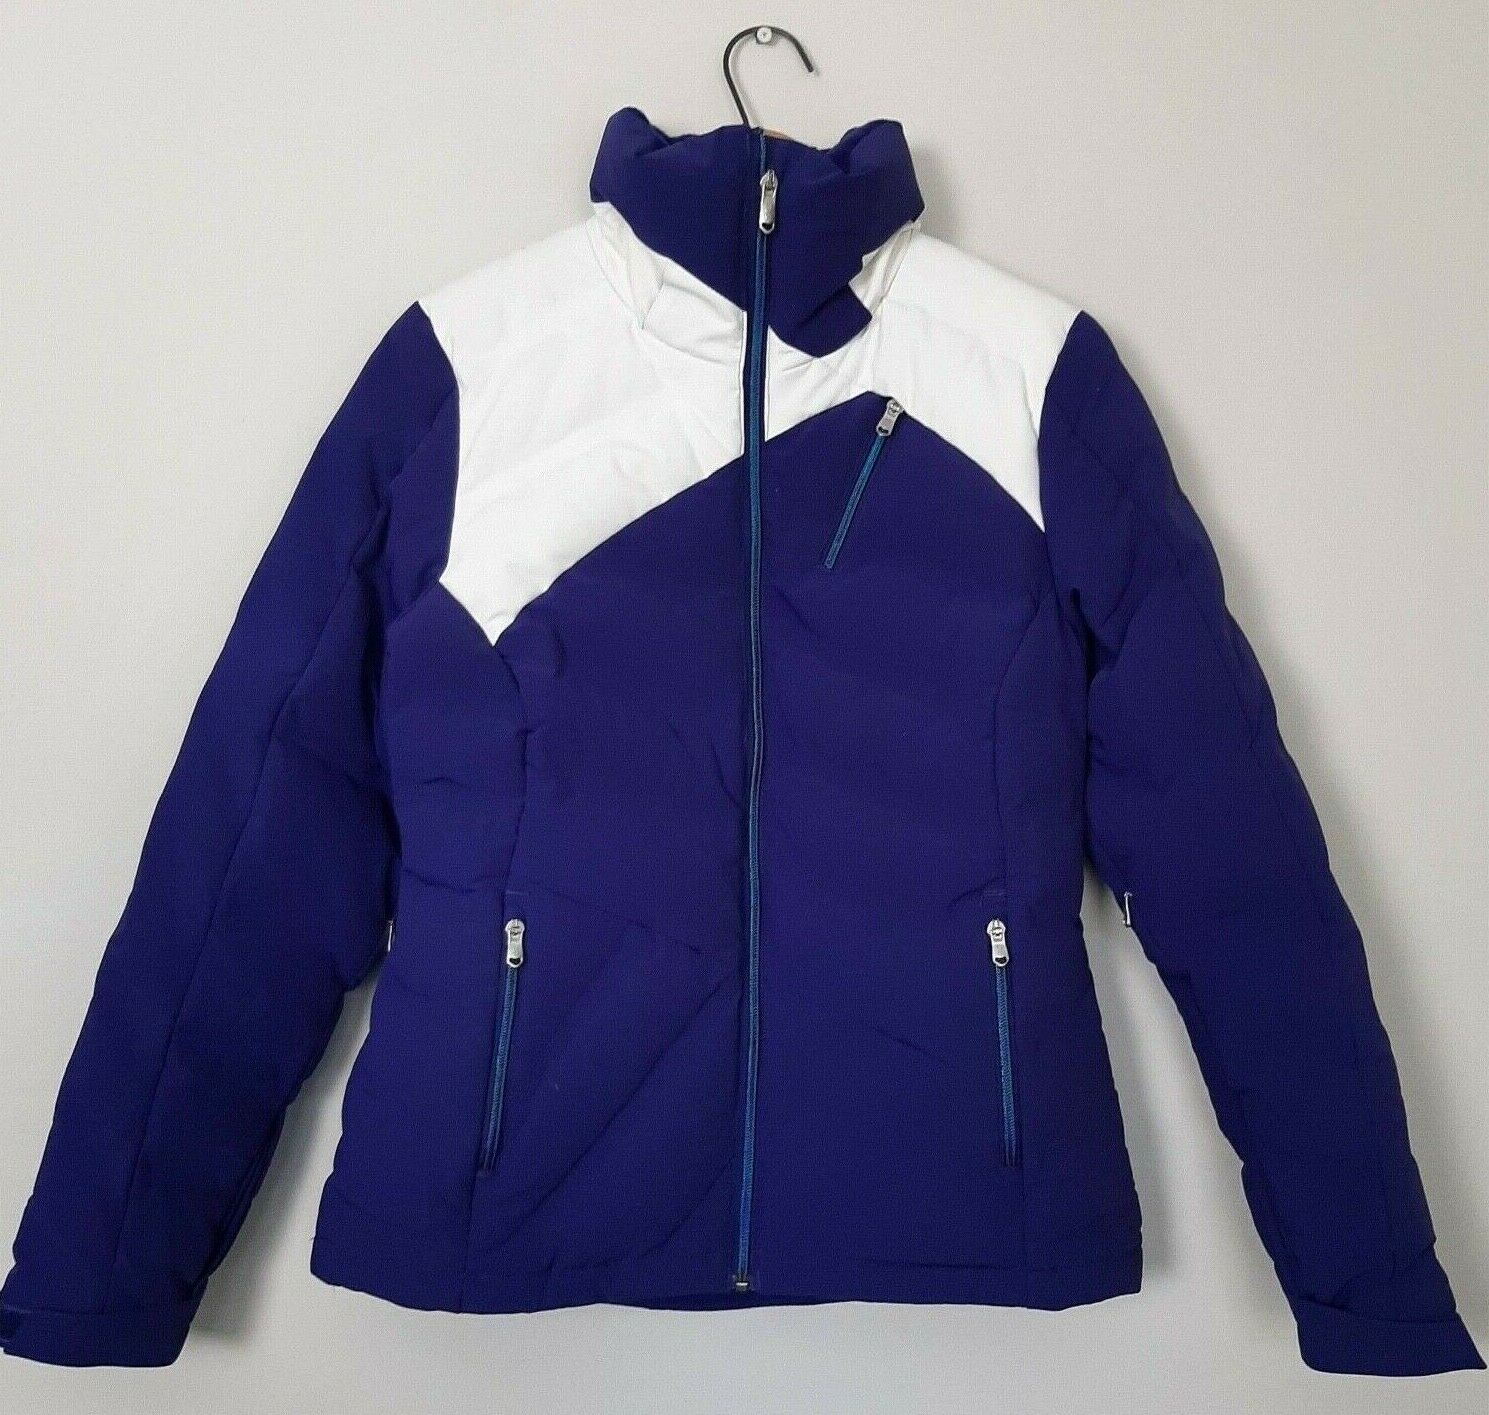 Spyder Womens Size 8 Purple White Breakout Duck Down Filled Ski Jacket